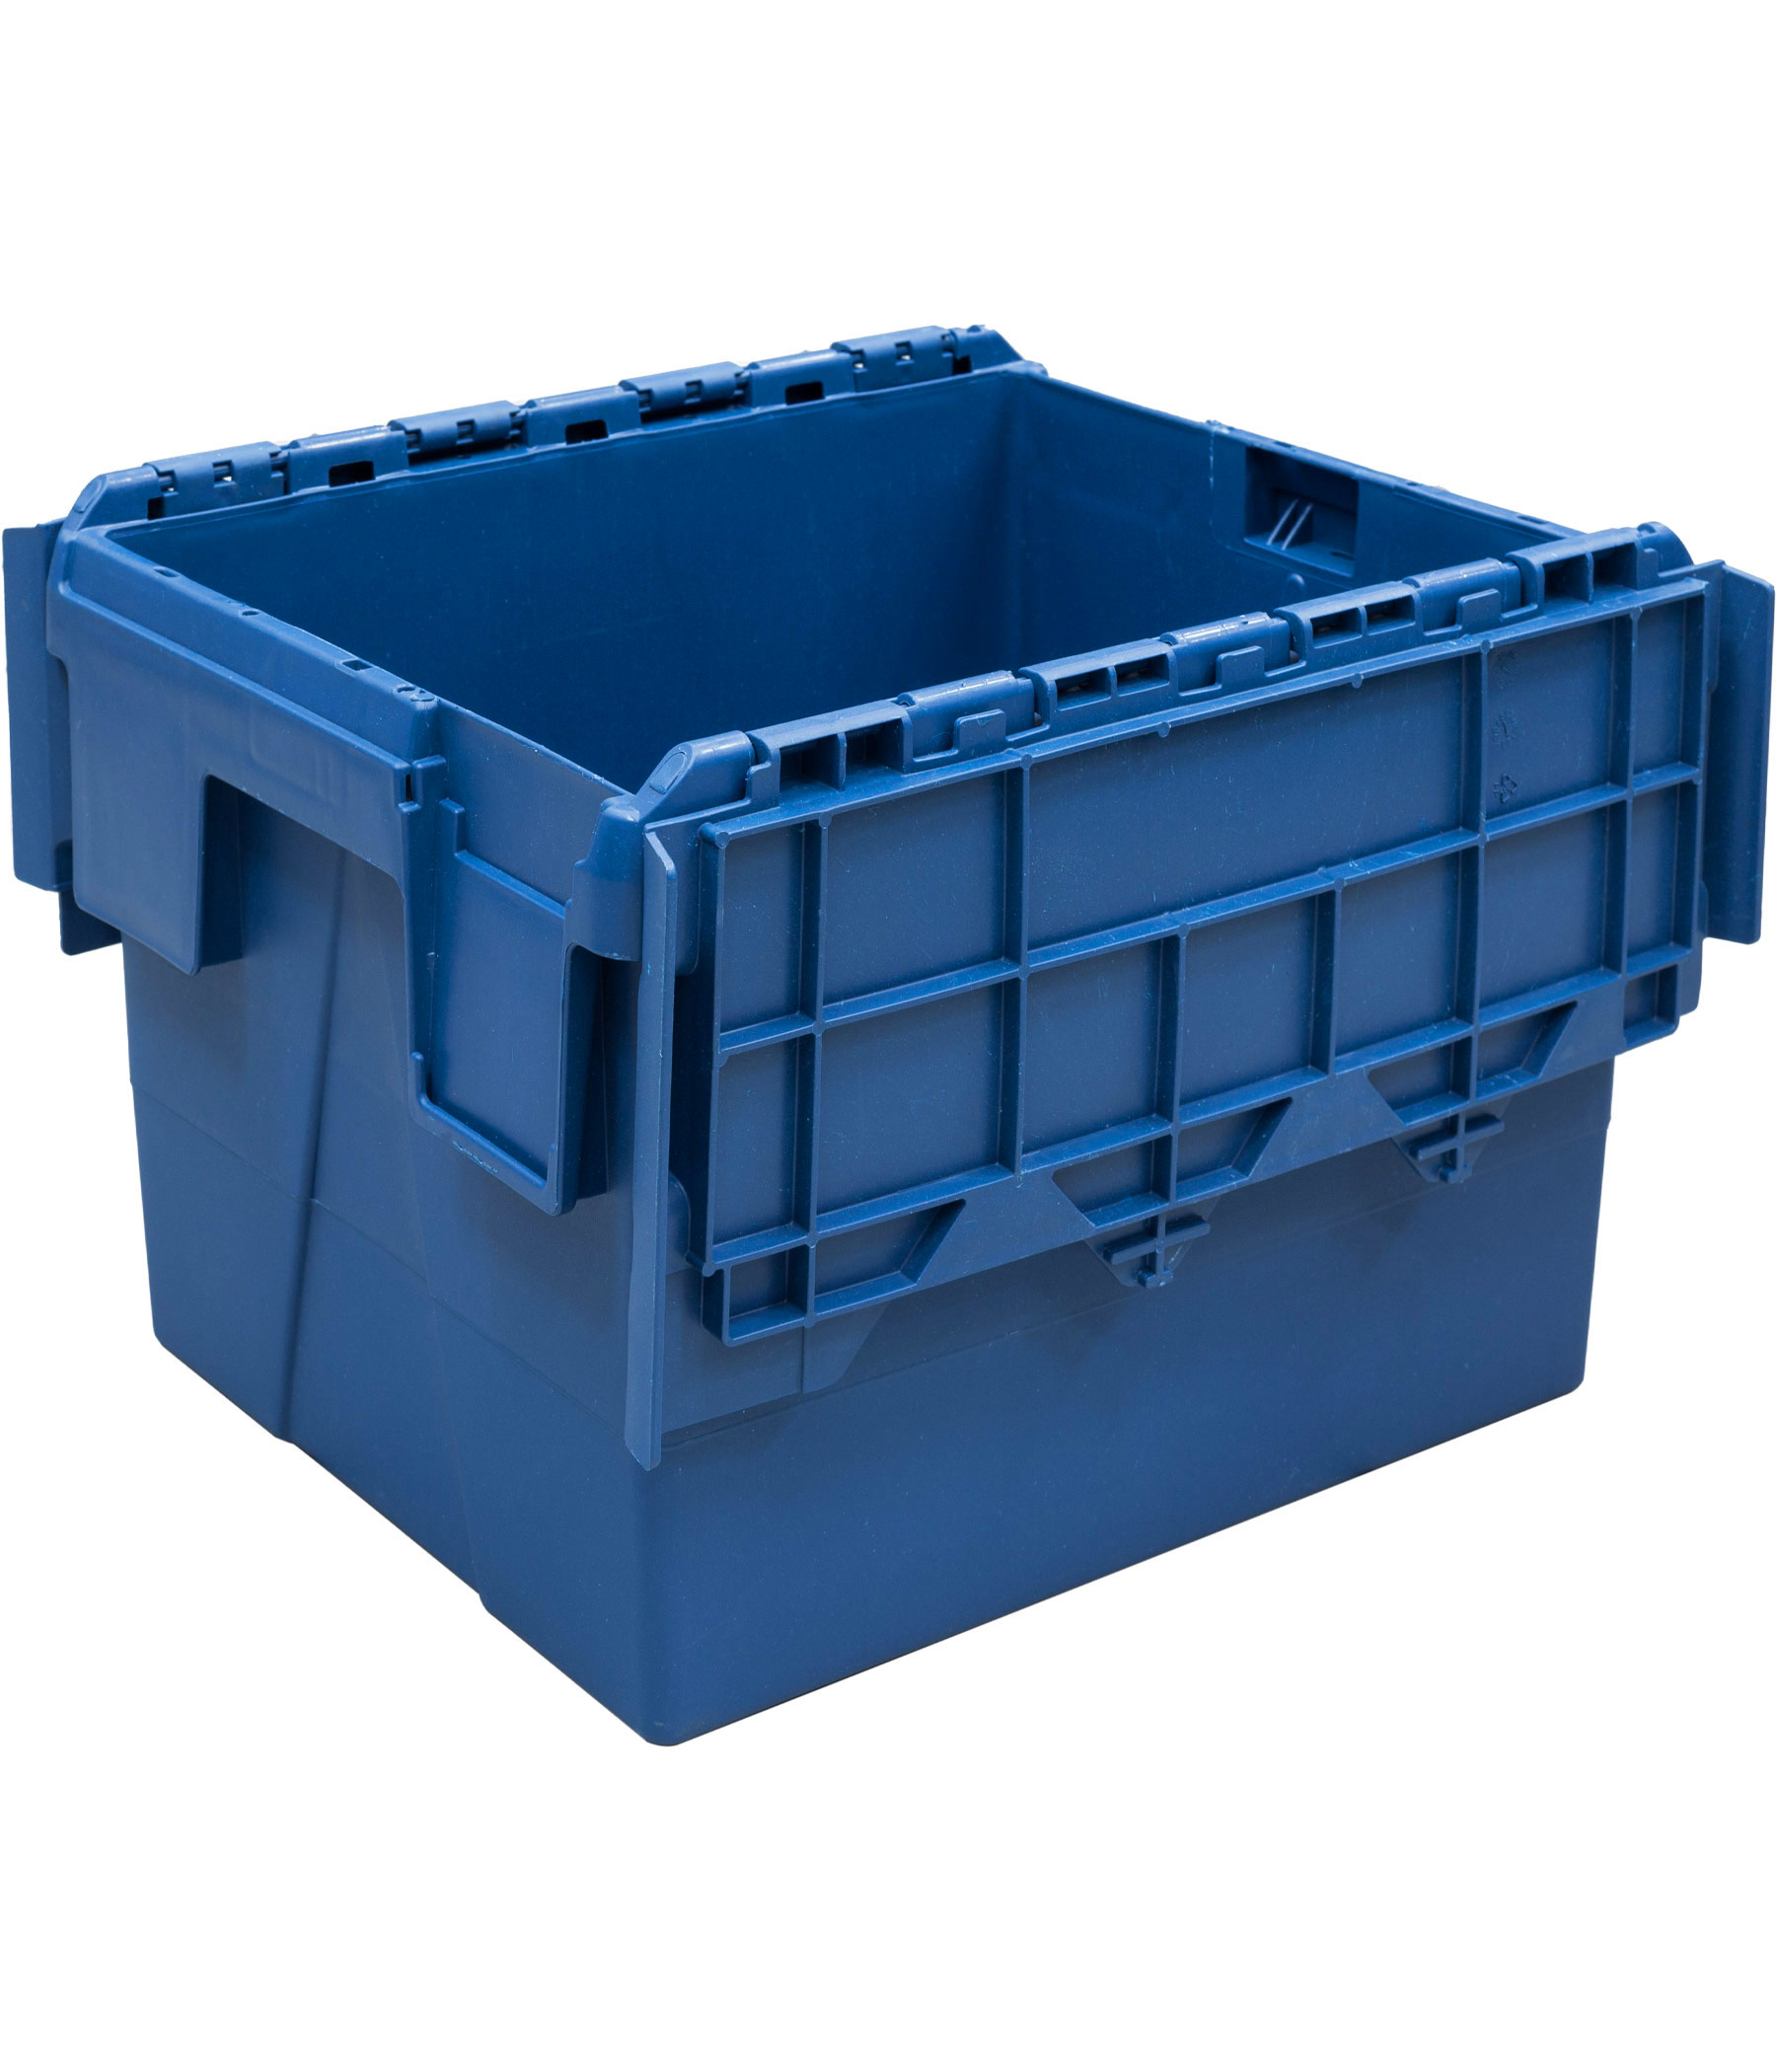 Пластиковый контейнер с крышкой SPKM 4325